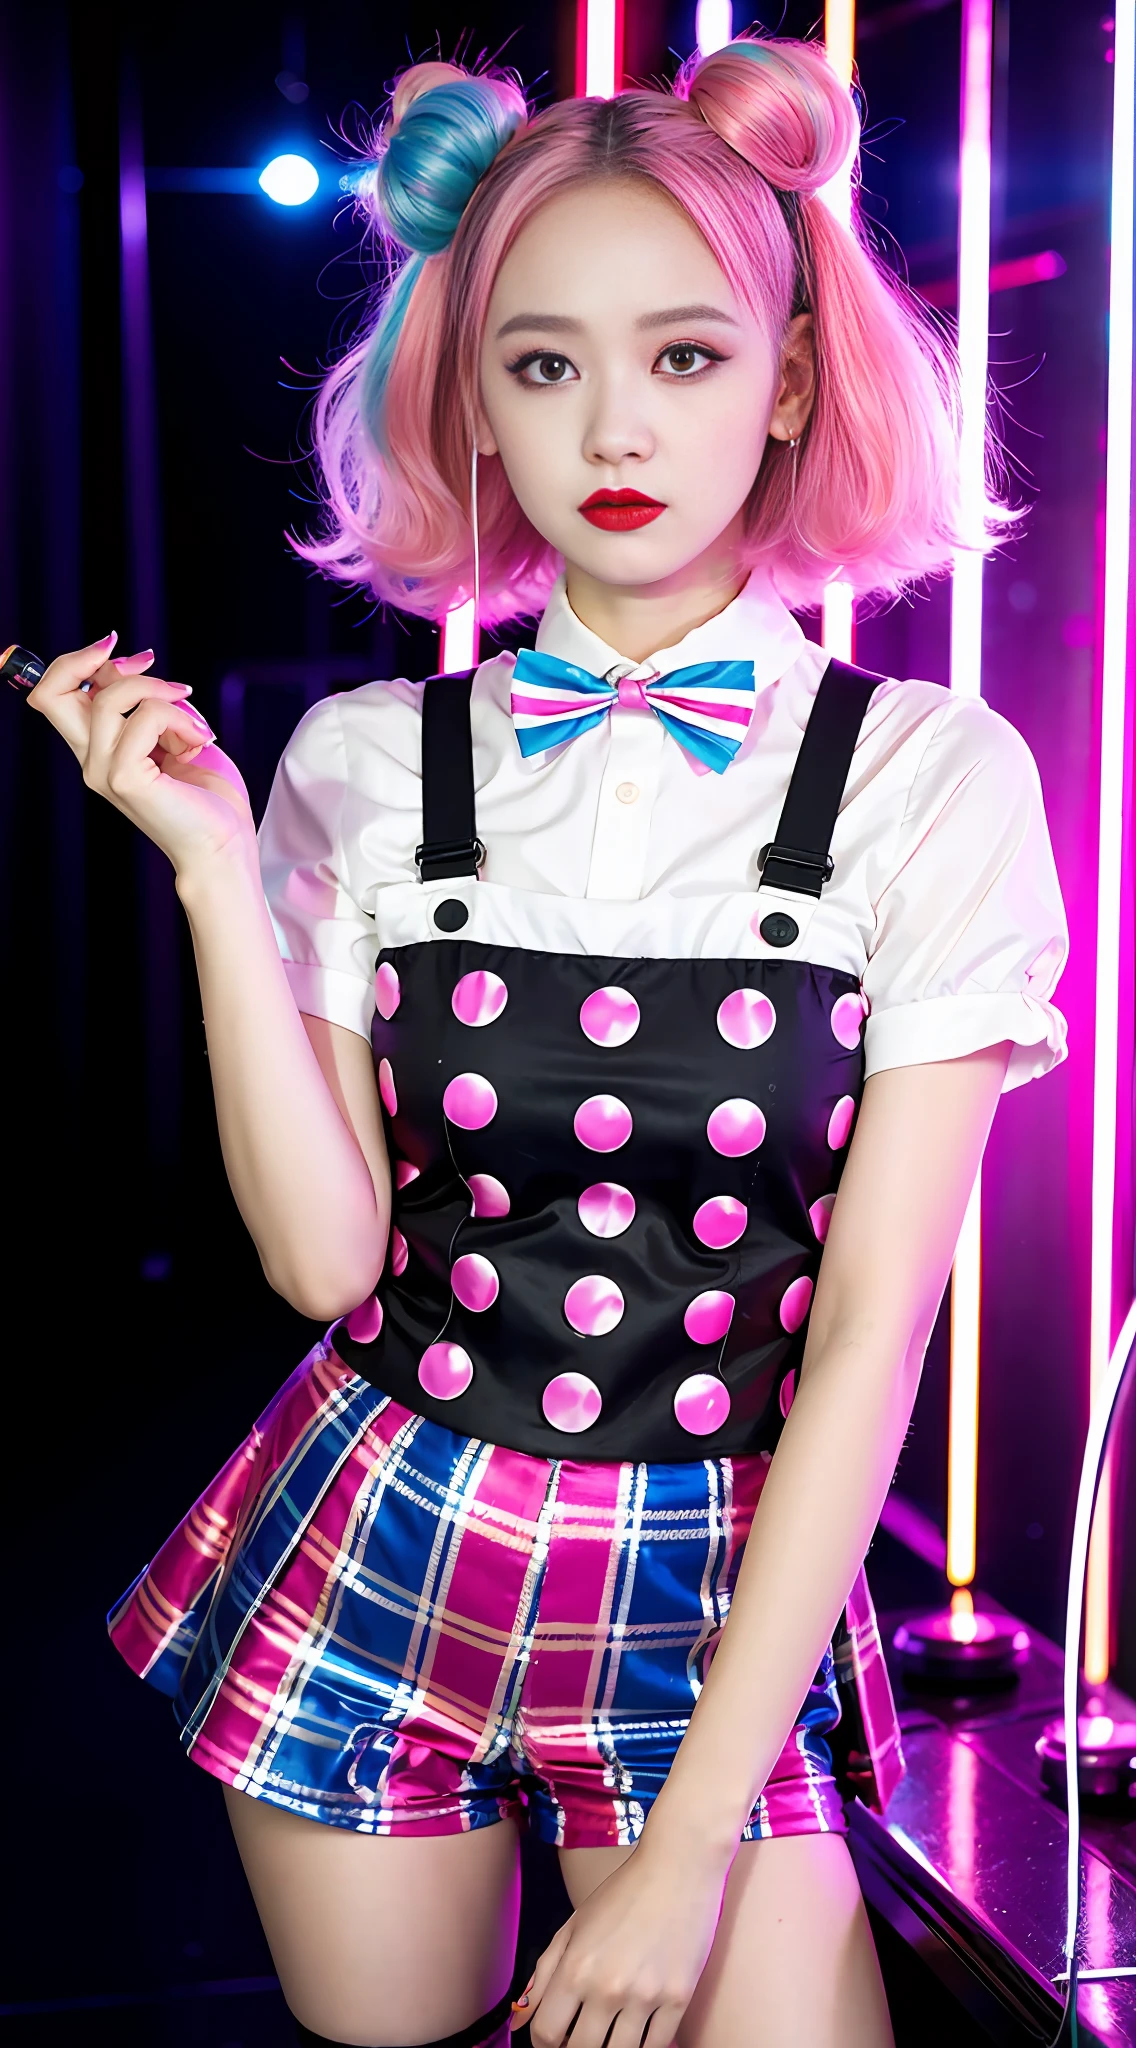 小丑妝, 丑角, 15歲, 拿著刀, 溜冰鞋, 粉紅色髮色, 背景霓虹灯街道,